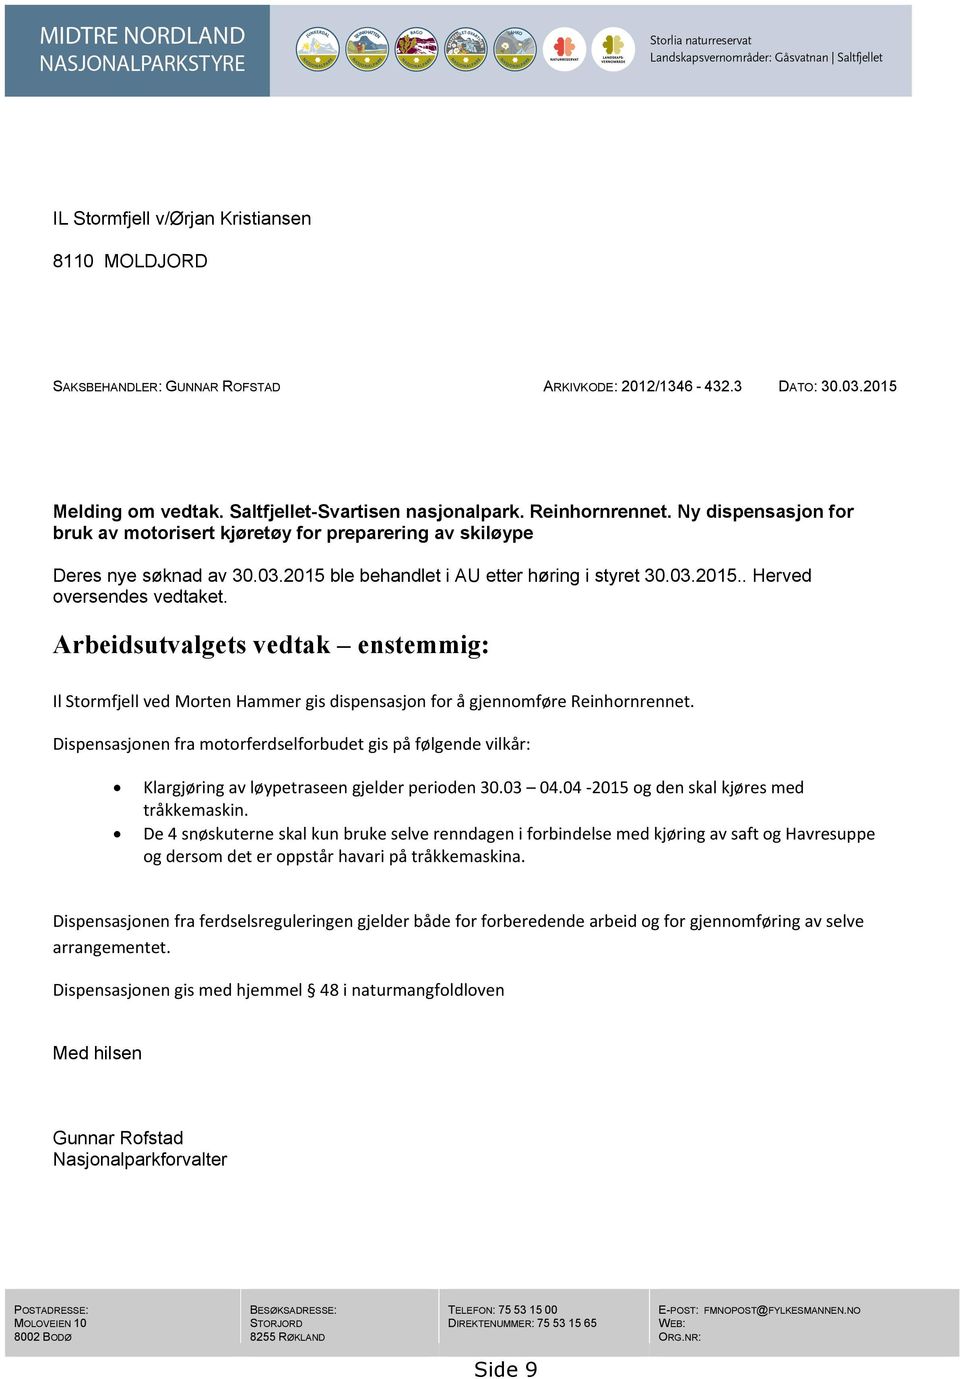 Arbeidsutvalgets vedtak enstemmig: Il Stormfjell ved Morten Hammer gis dispensasjon for å gjennomføre Reinhornrennet.